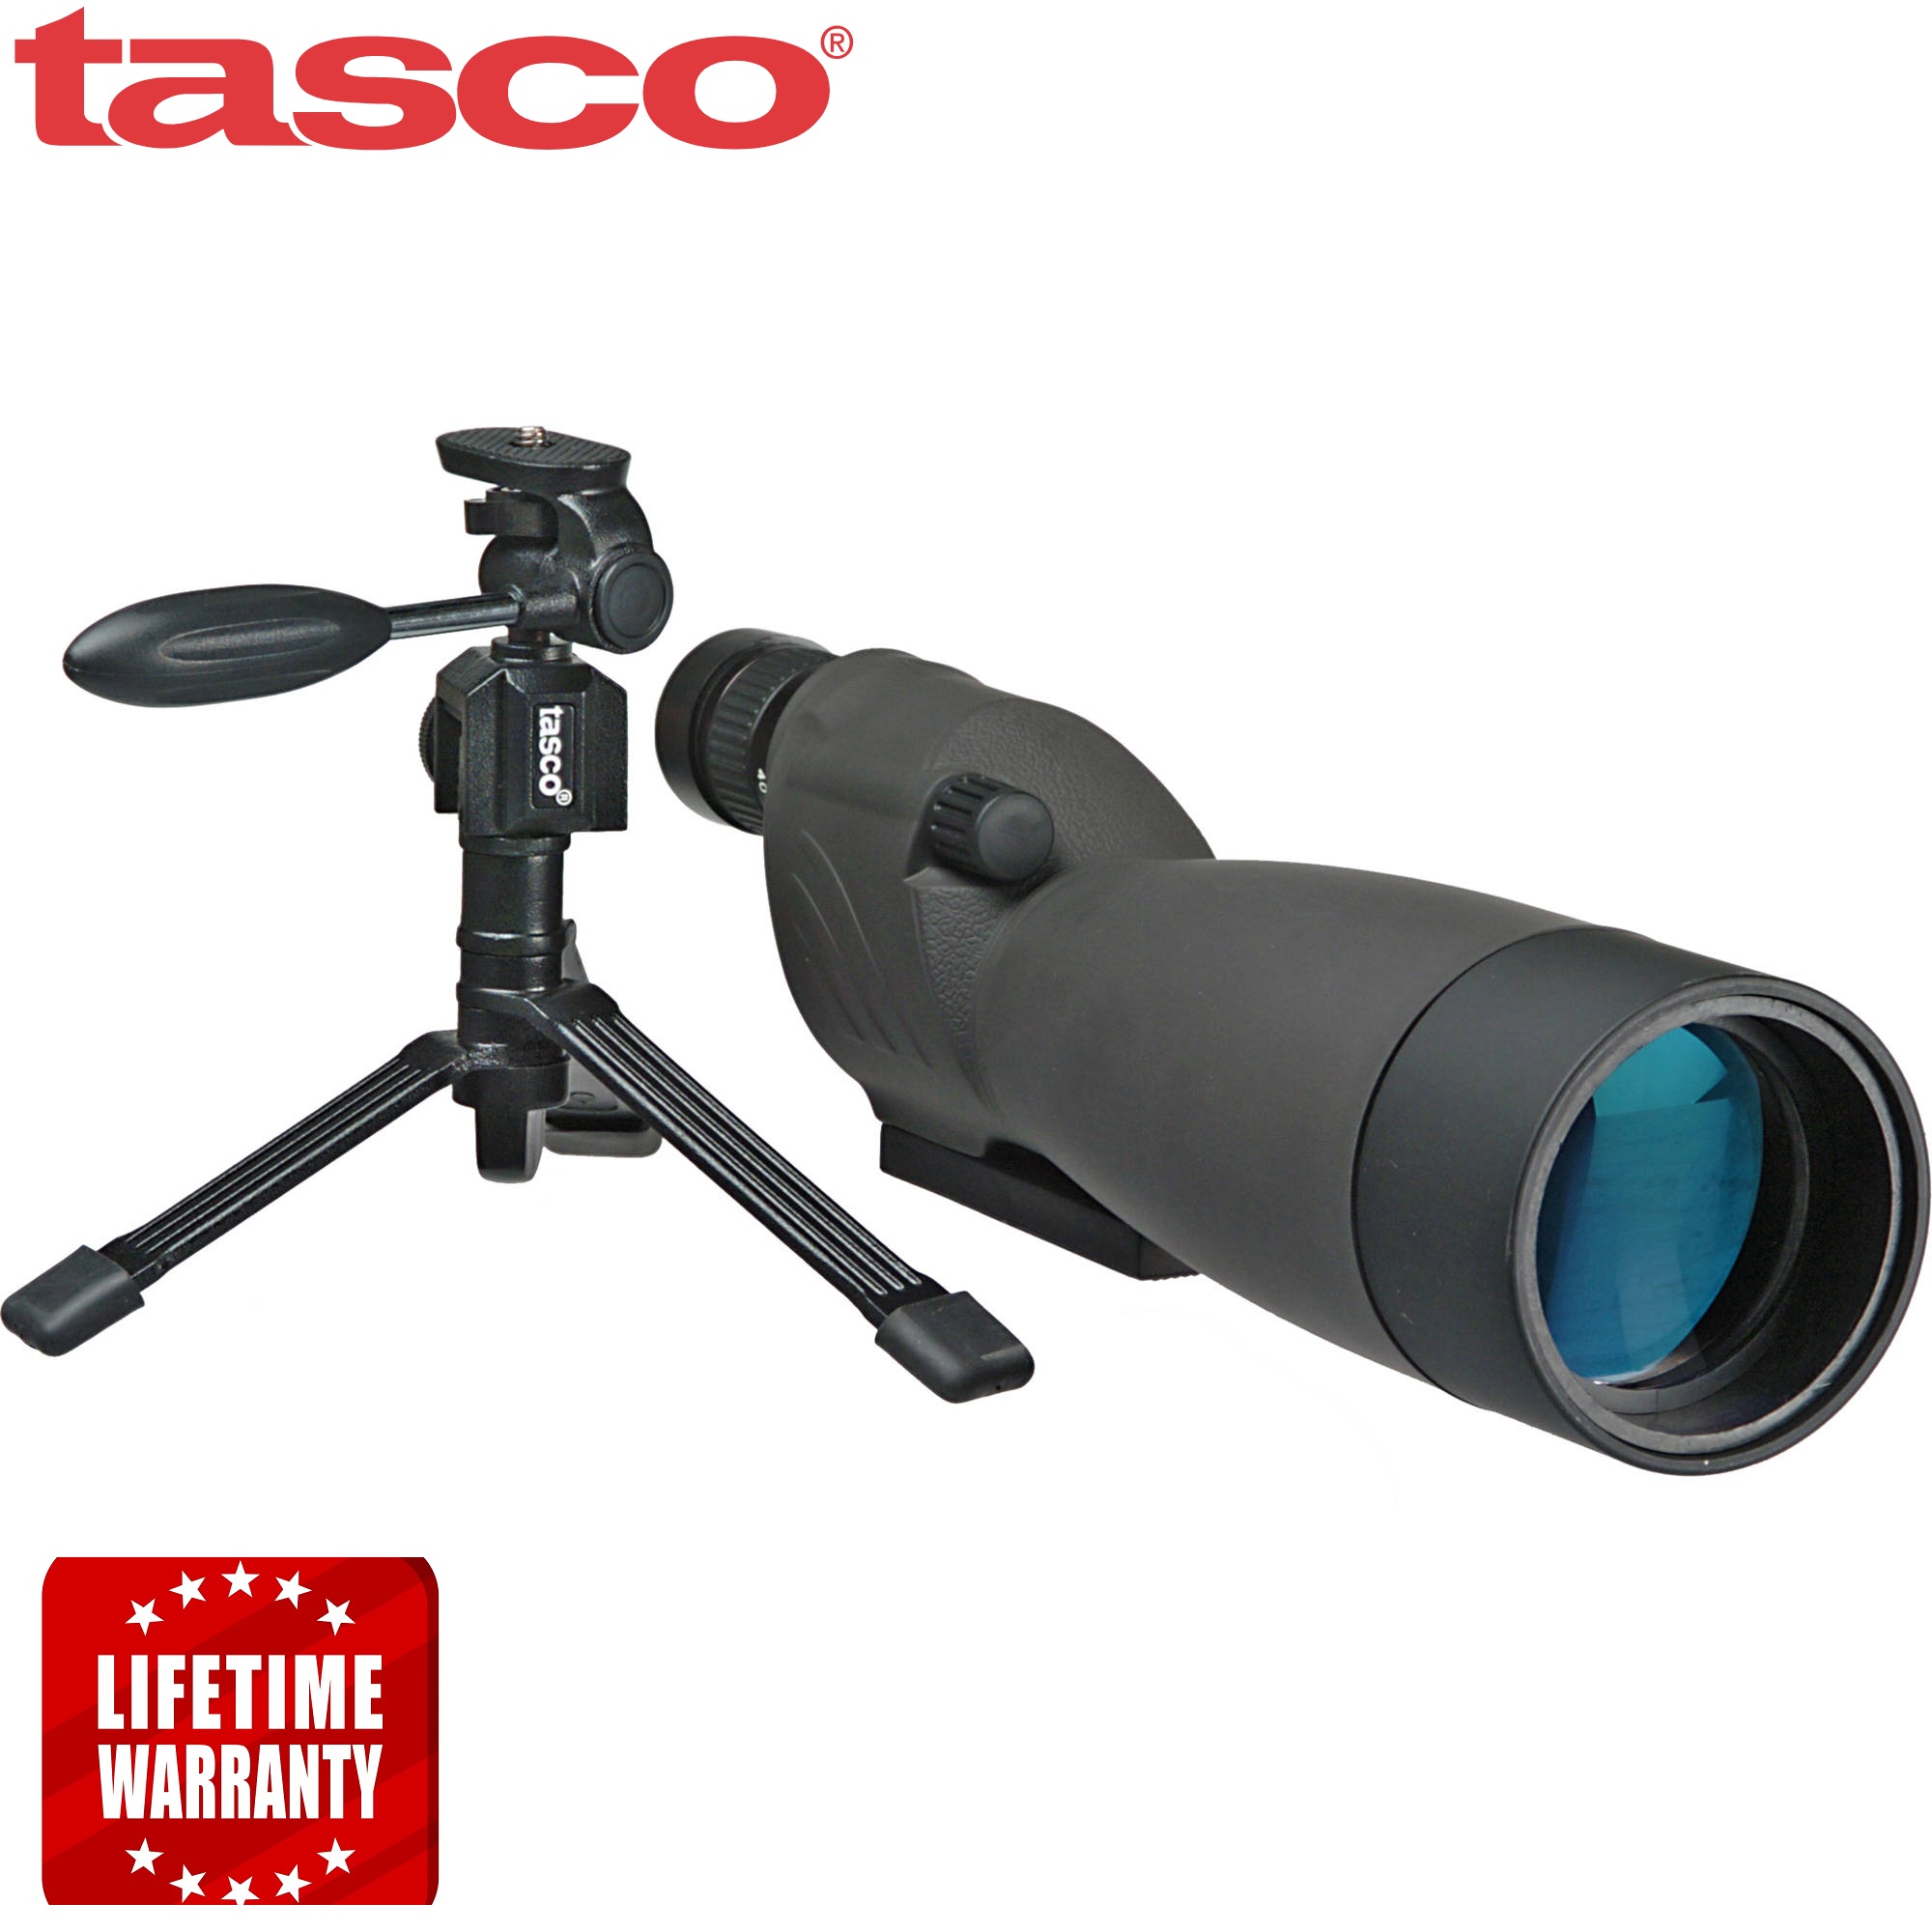 Tasco 20-60x60mm World Class Zoom Spotting Scope with Tripod